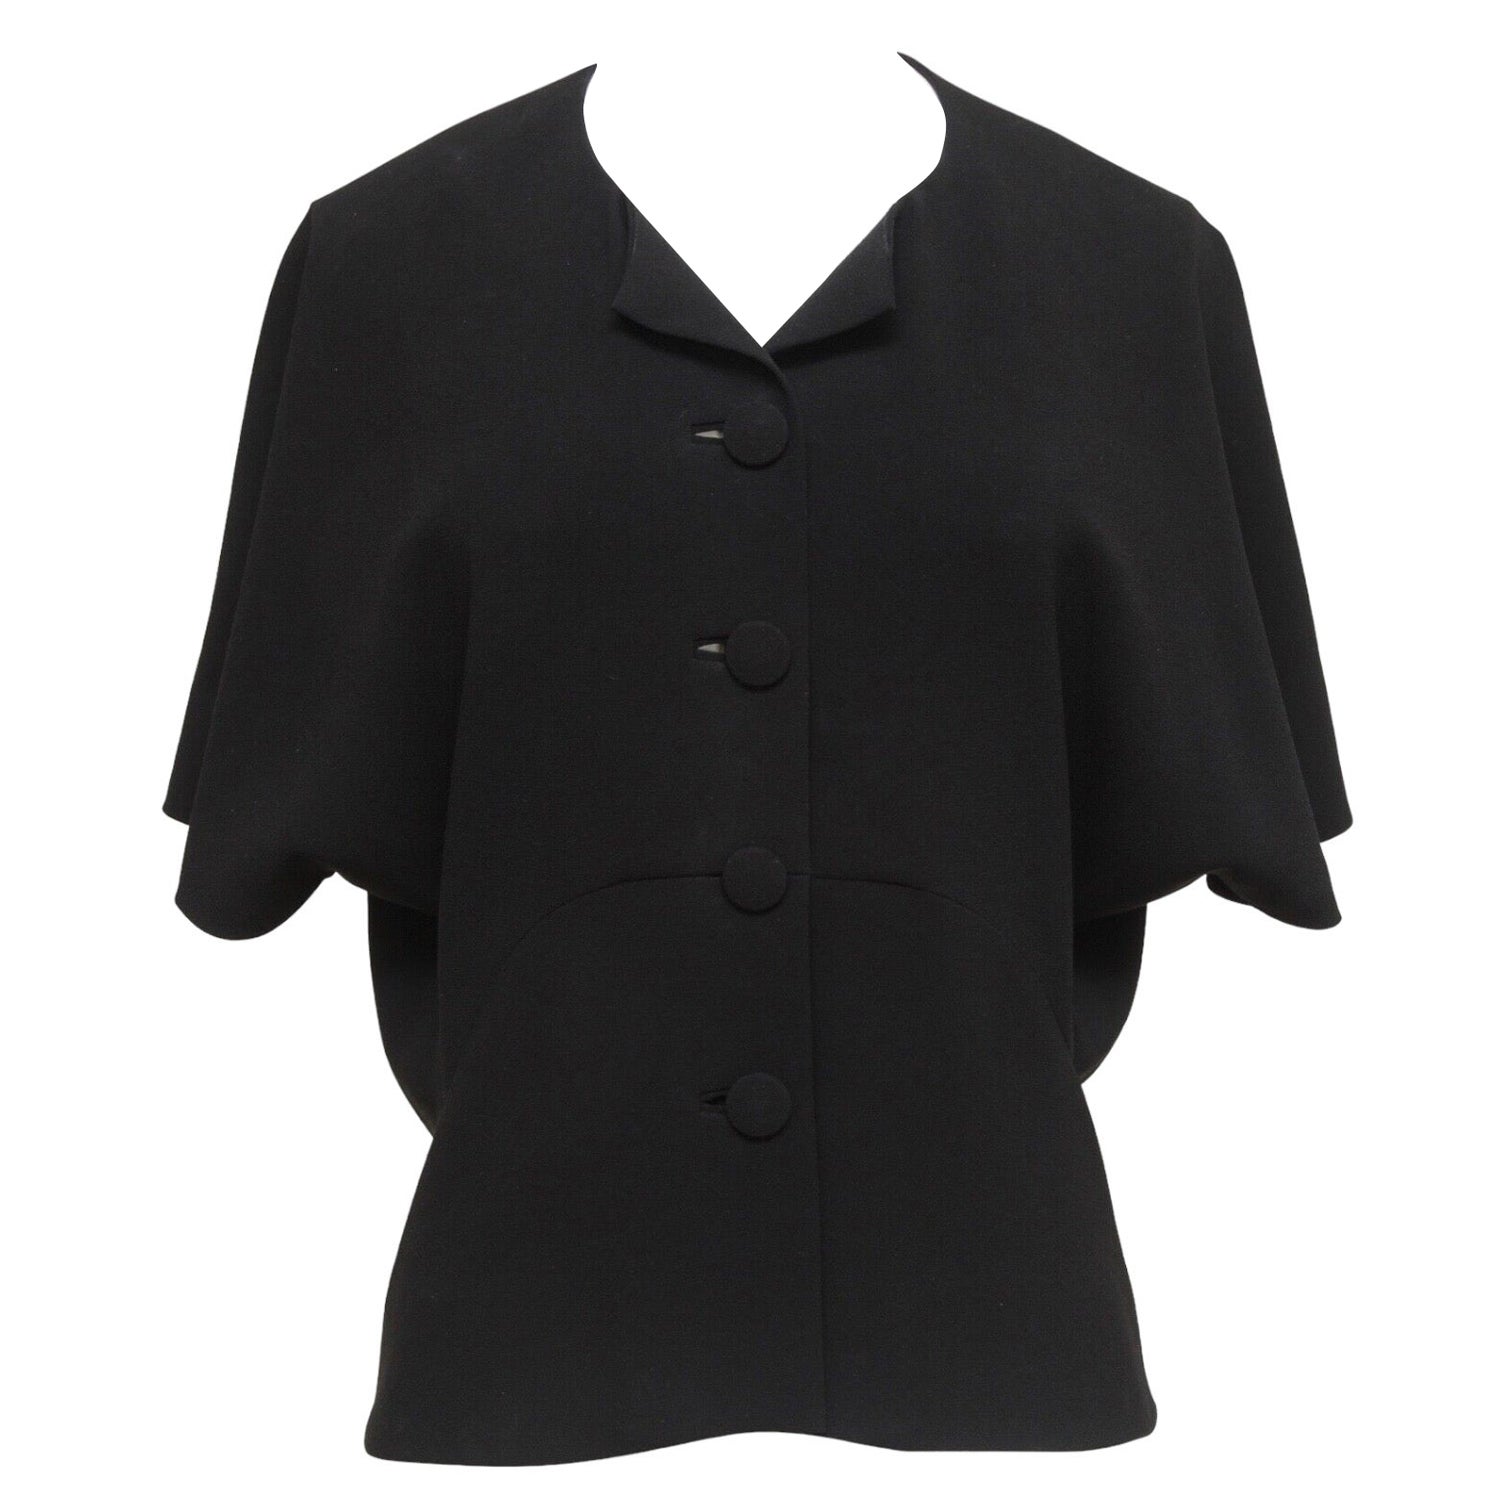 BALENCIAGA.EDITION Blouse Top Shirt BLACK Cape Sleeve Button Down Sz 36